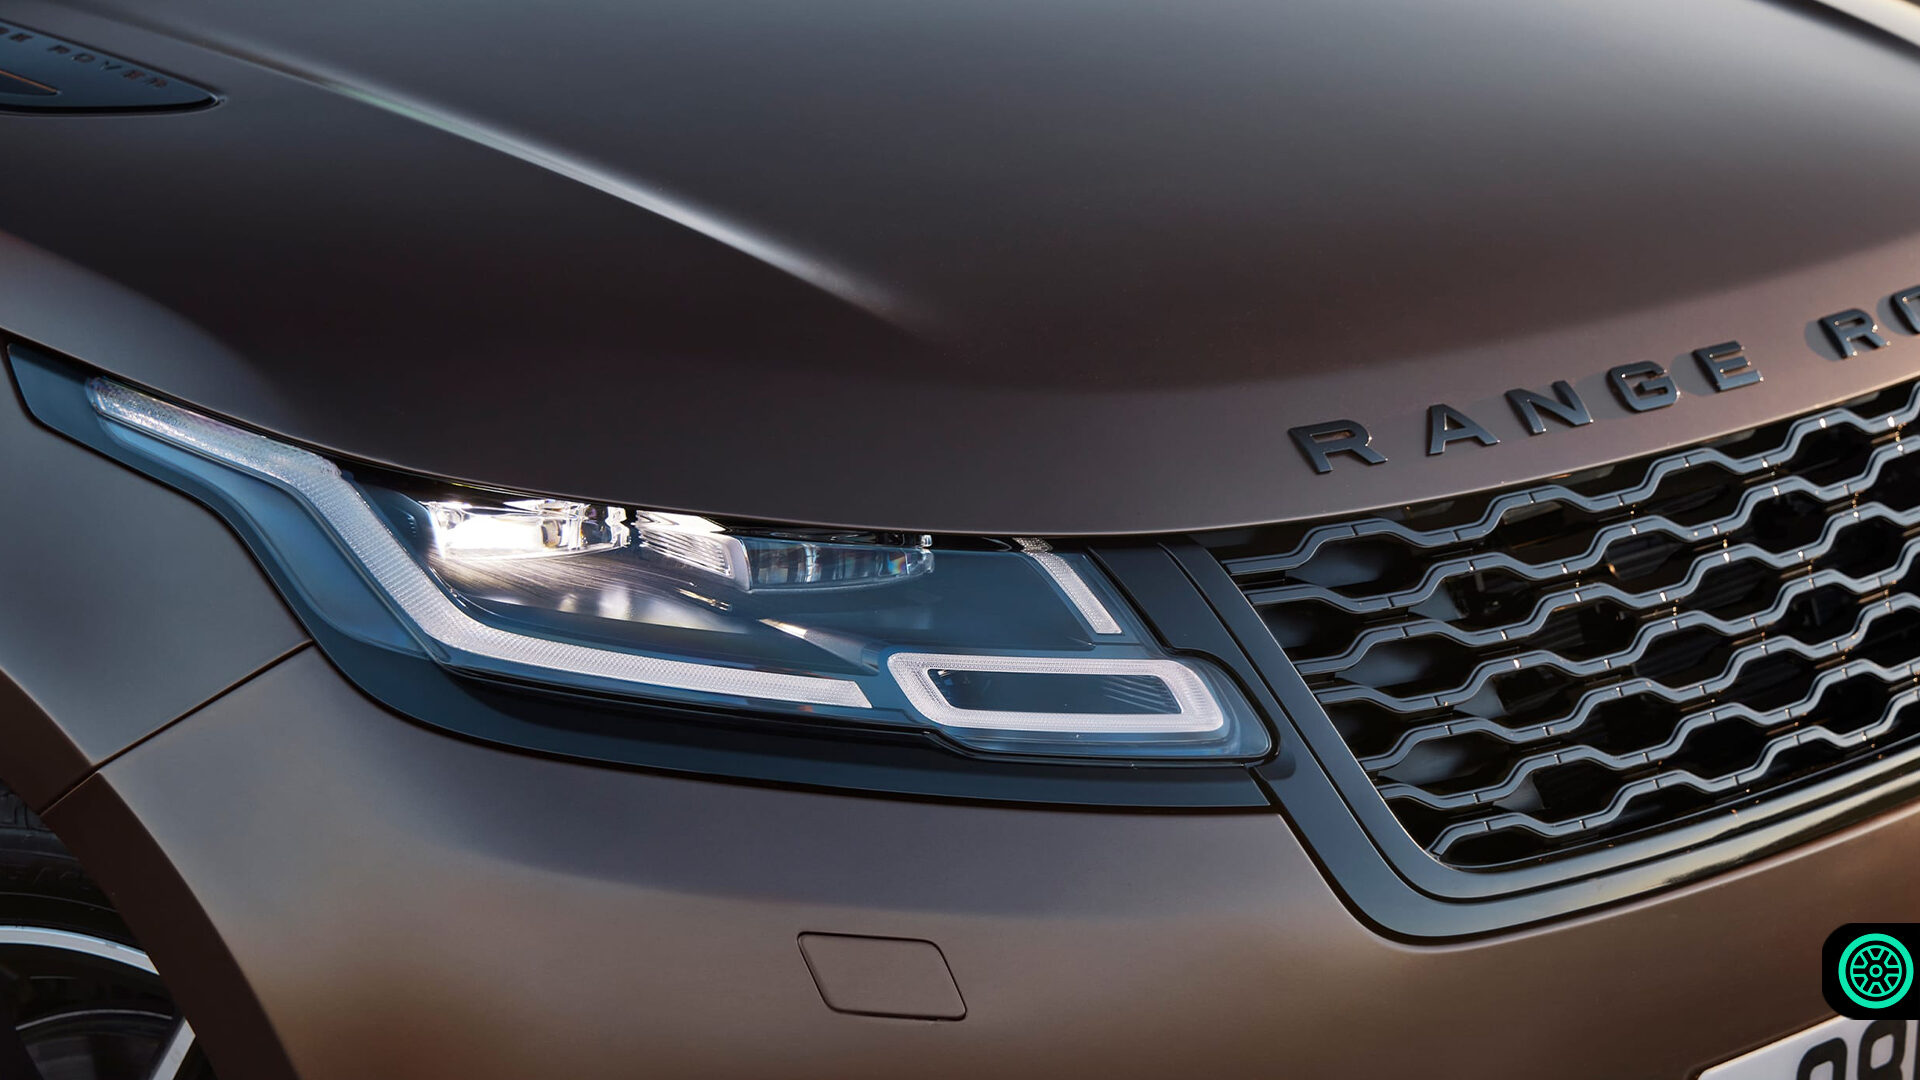 2021 Range Rover Velar teknolojik anlamda güncelleniyor 11